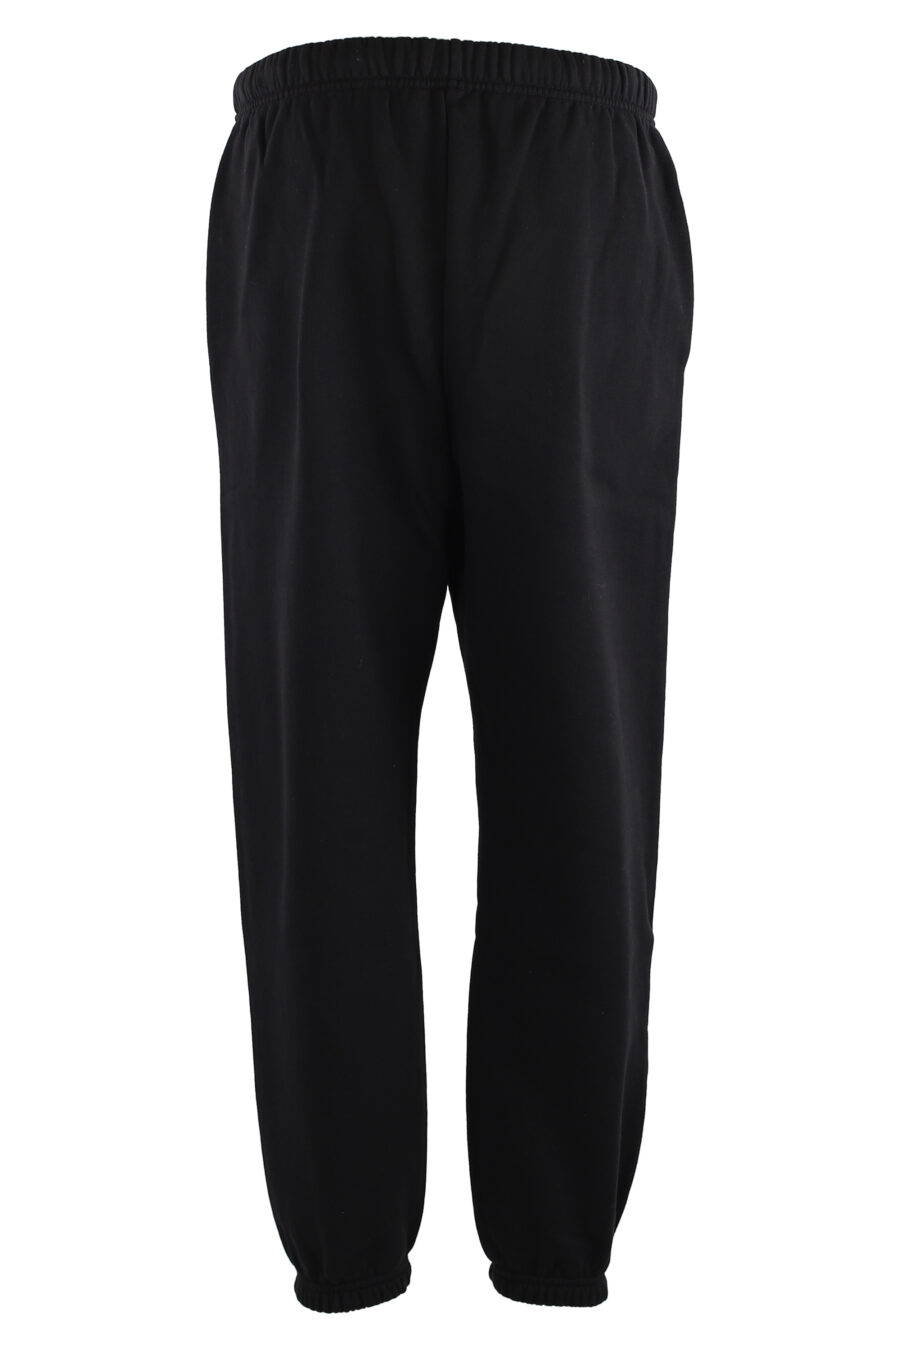 Pantalón de chándal negro con logo "icon" vertical - IMG 7573